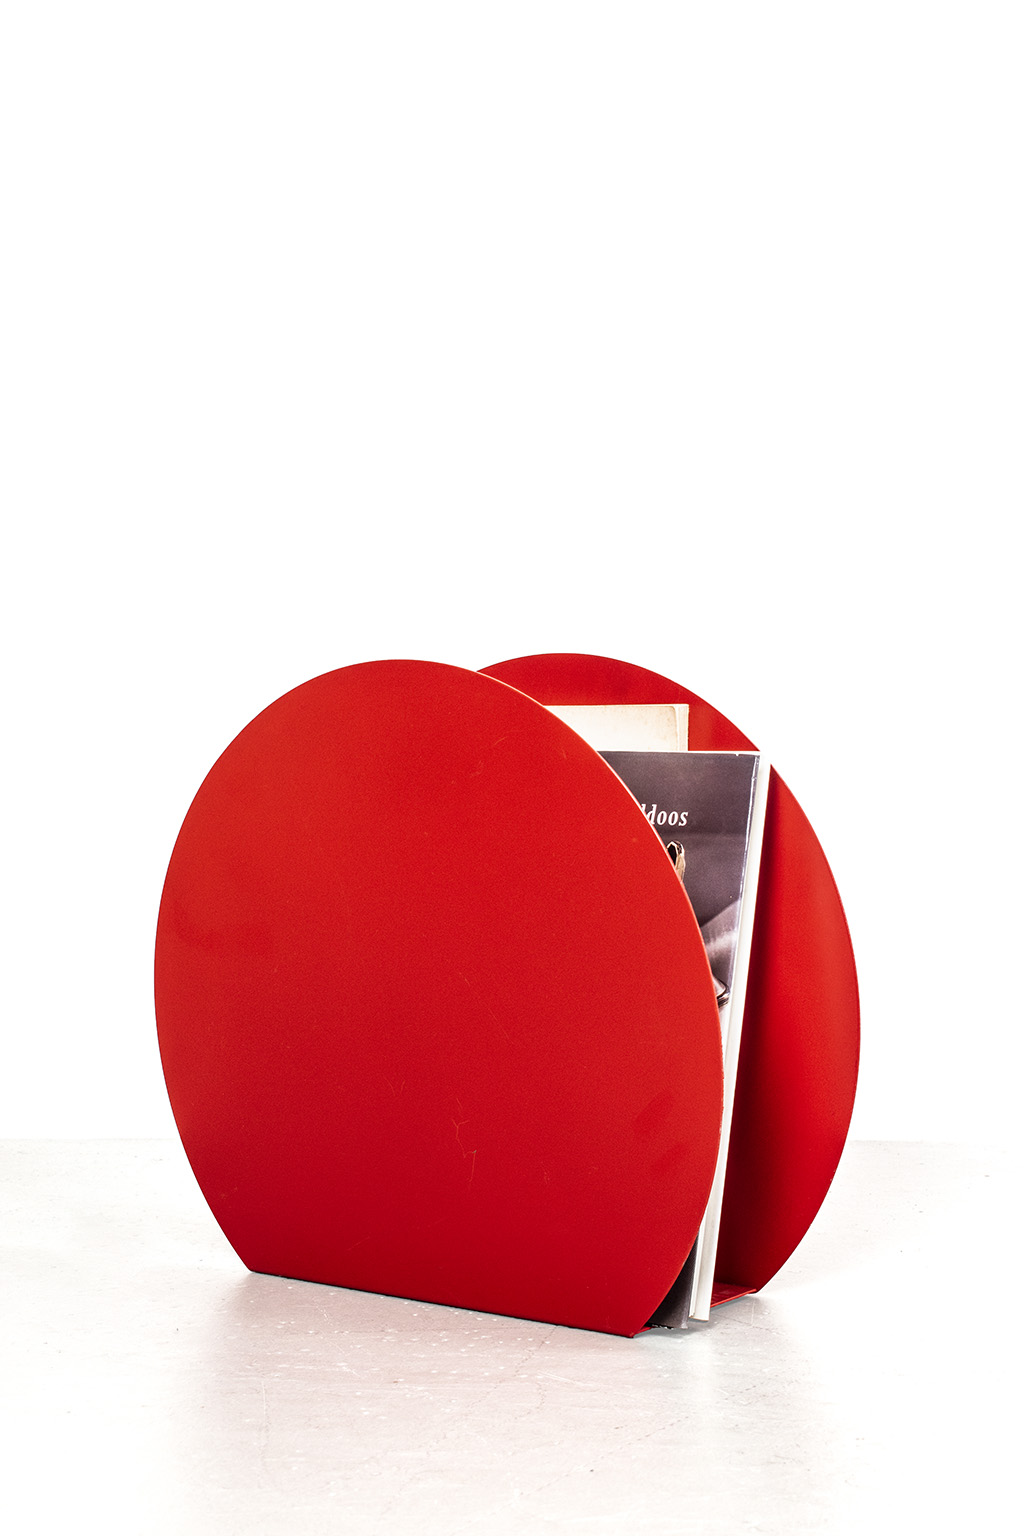 Round red magazine holder